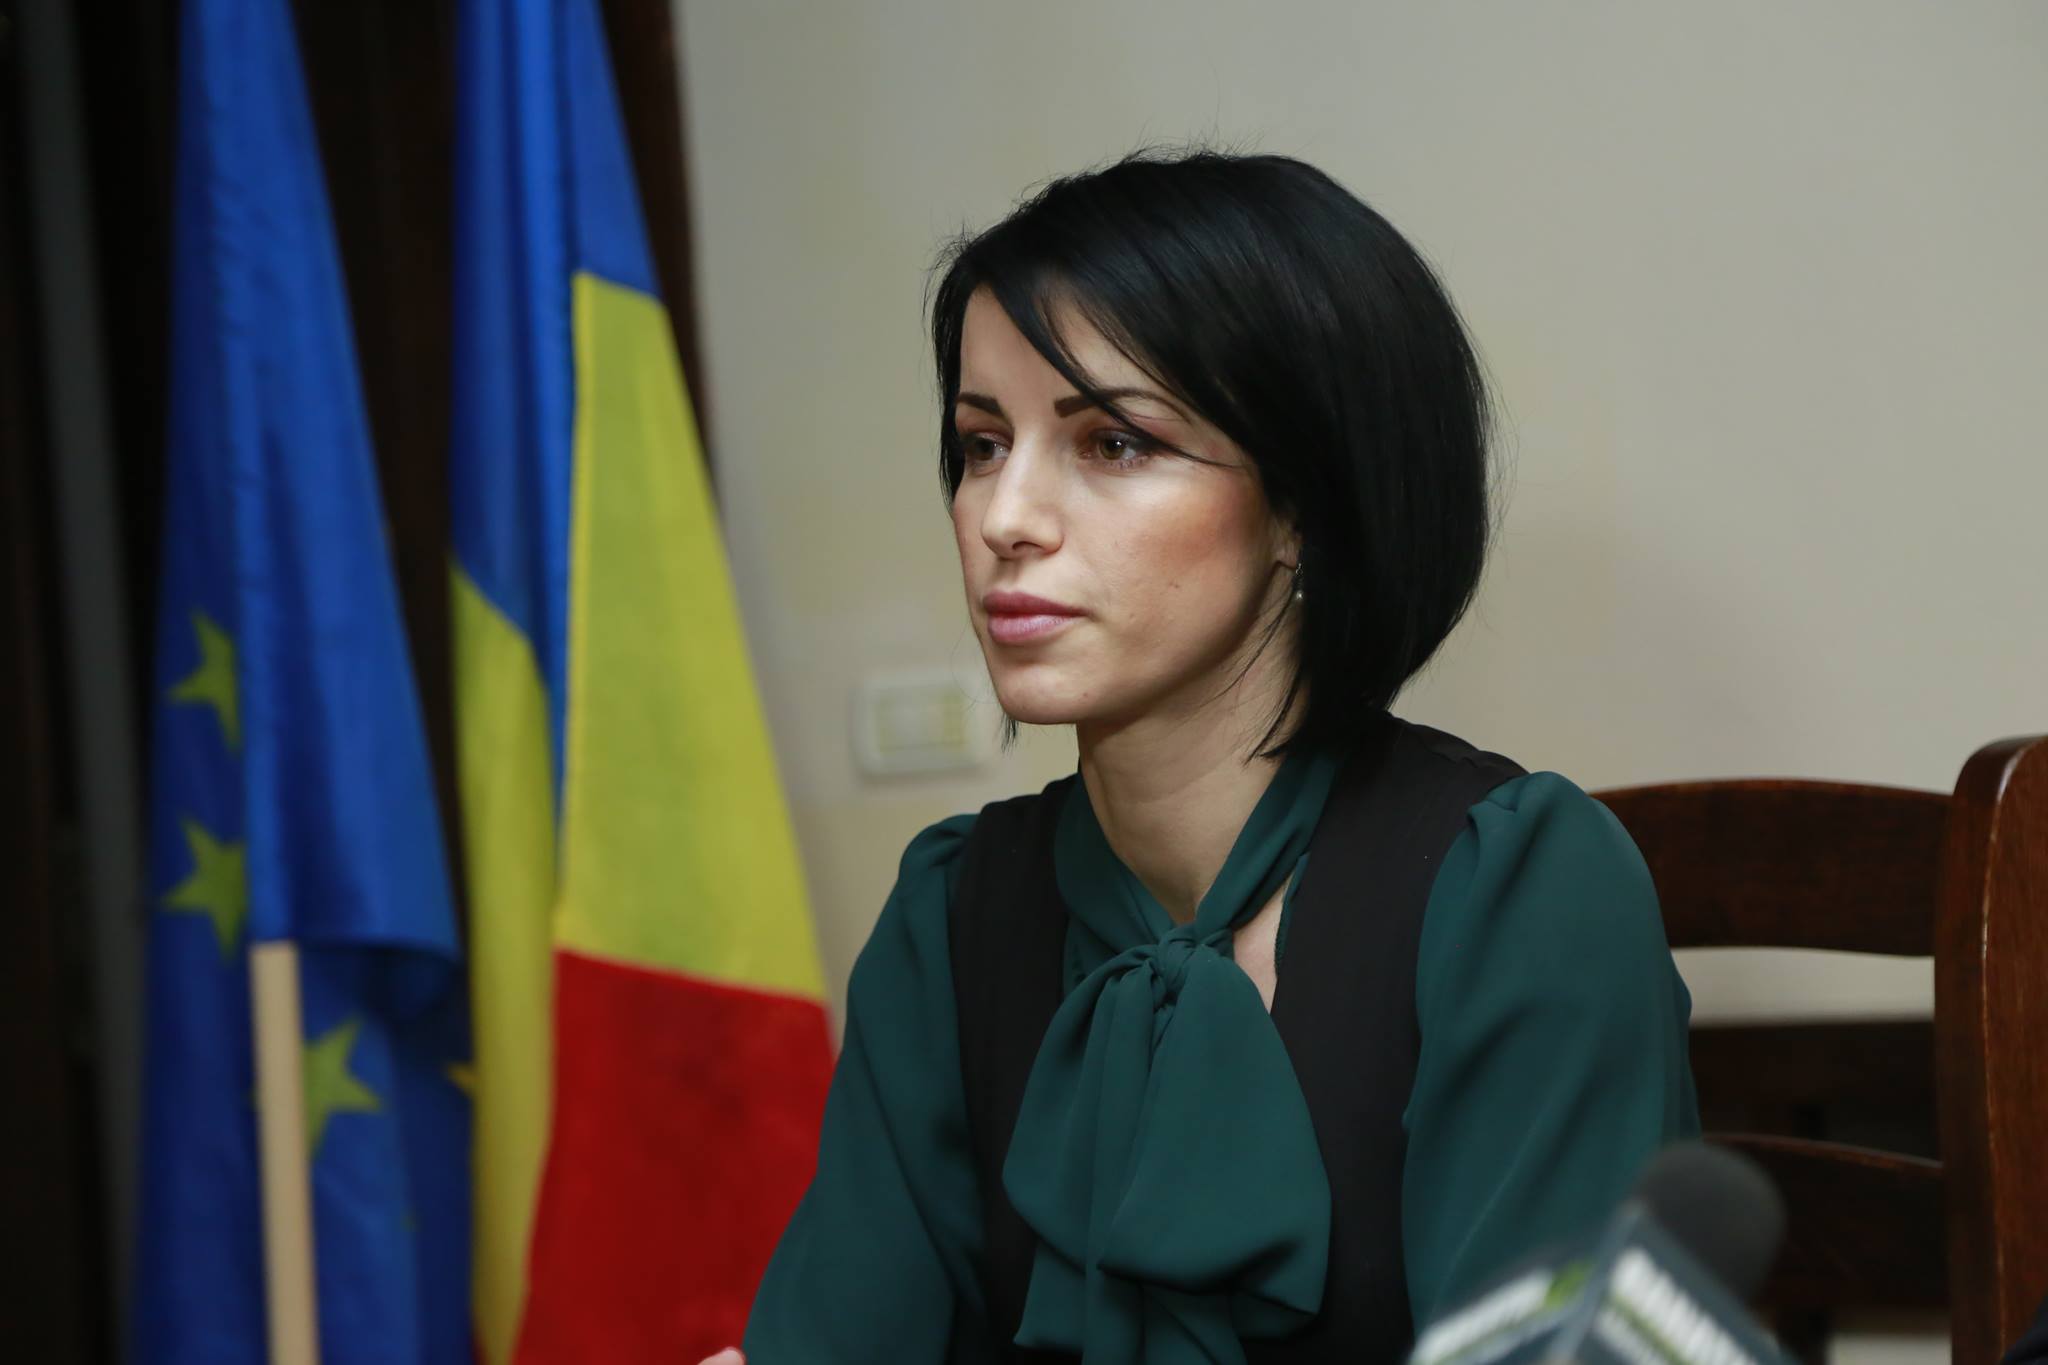 Roxana Iliescu se înscrie în Pro România